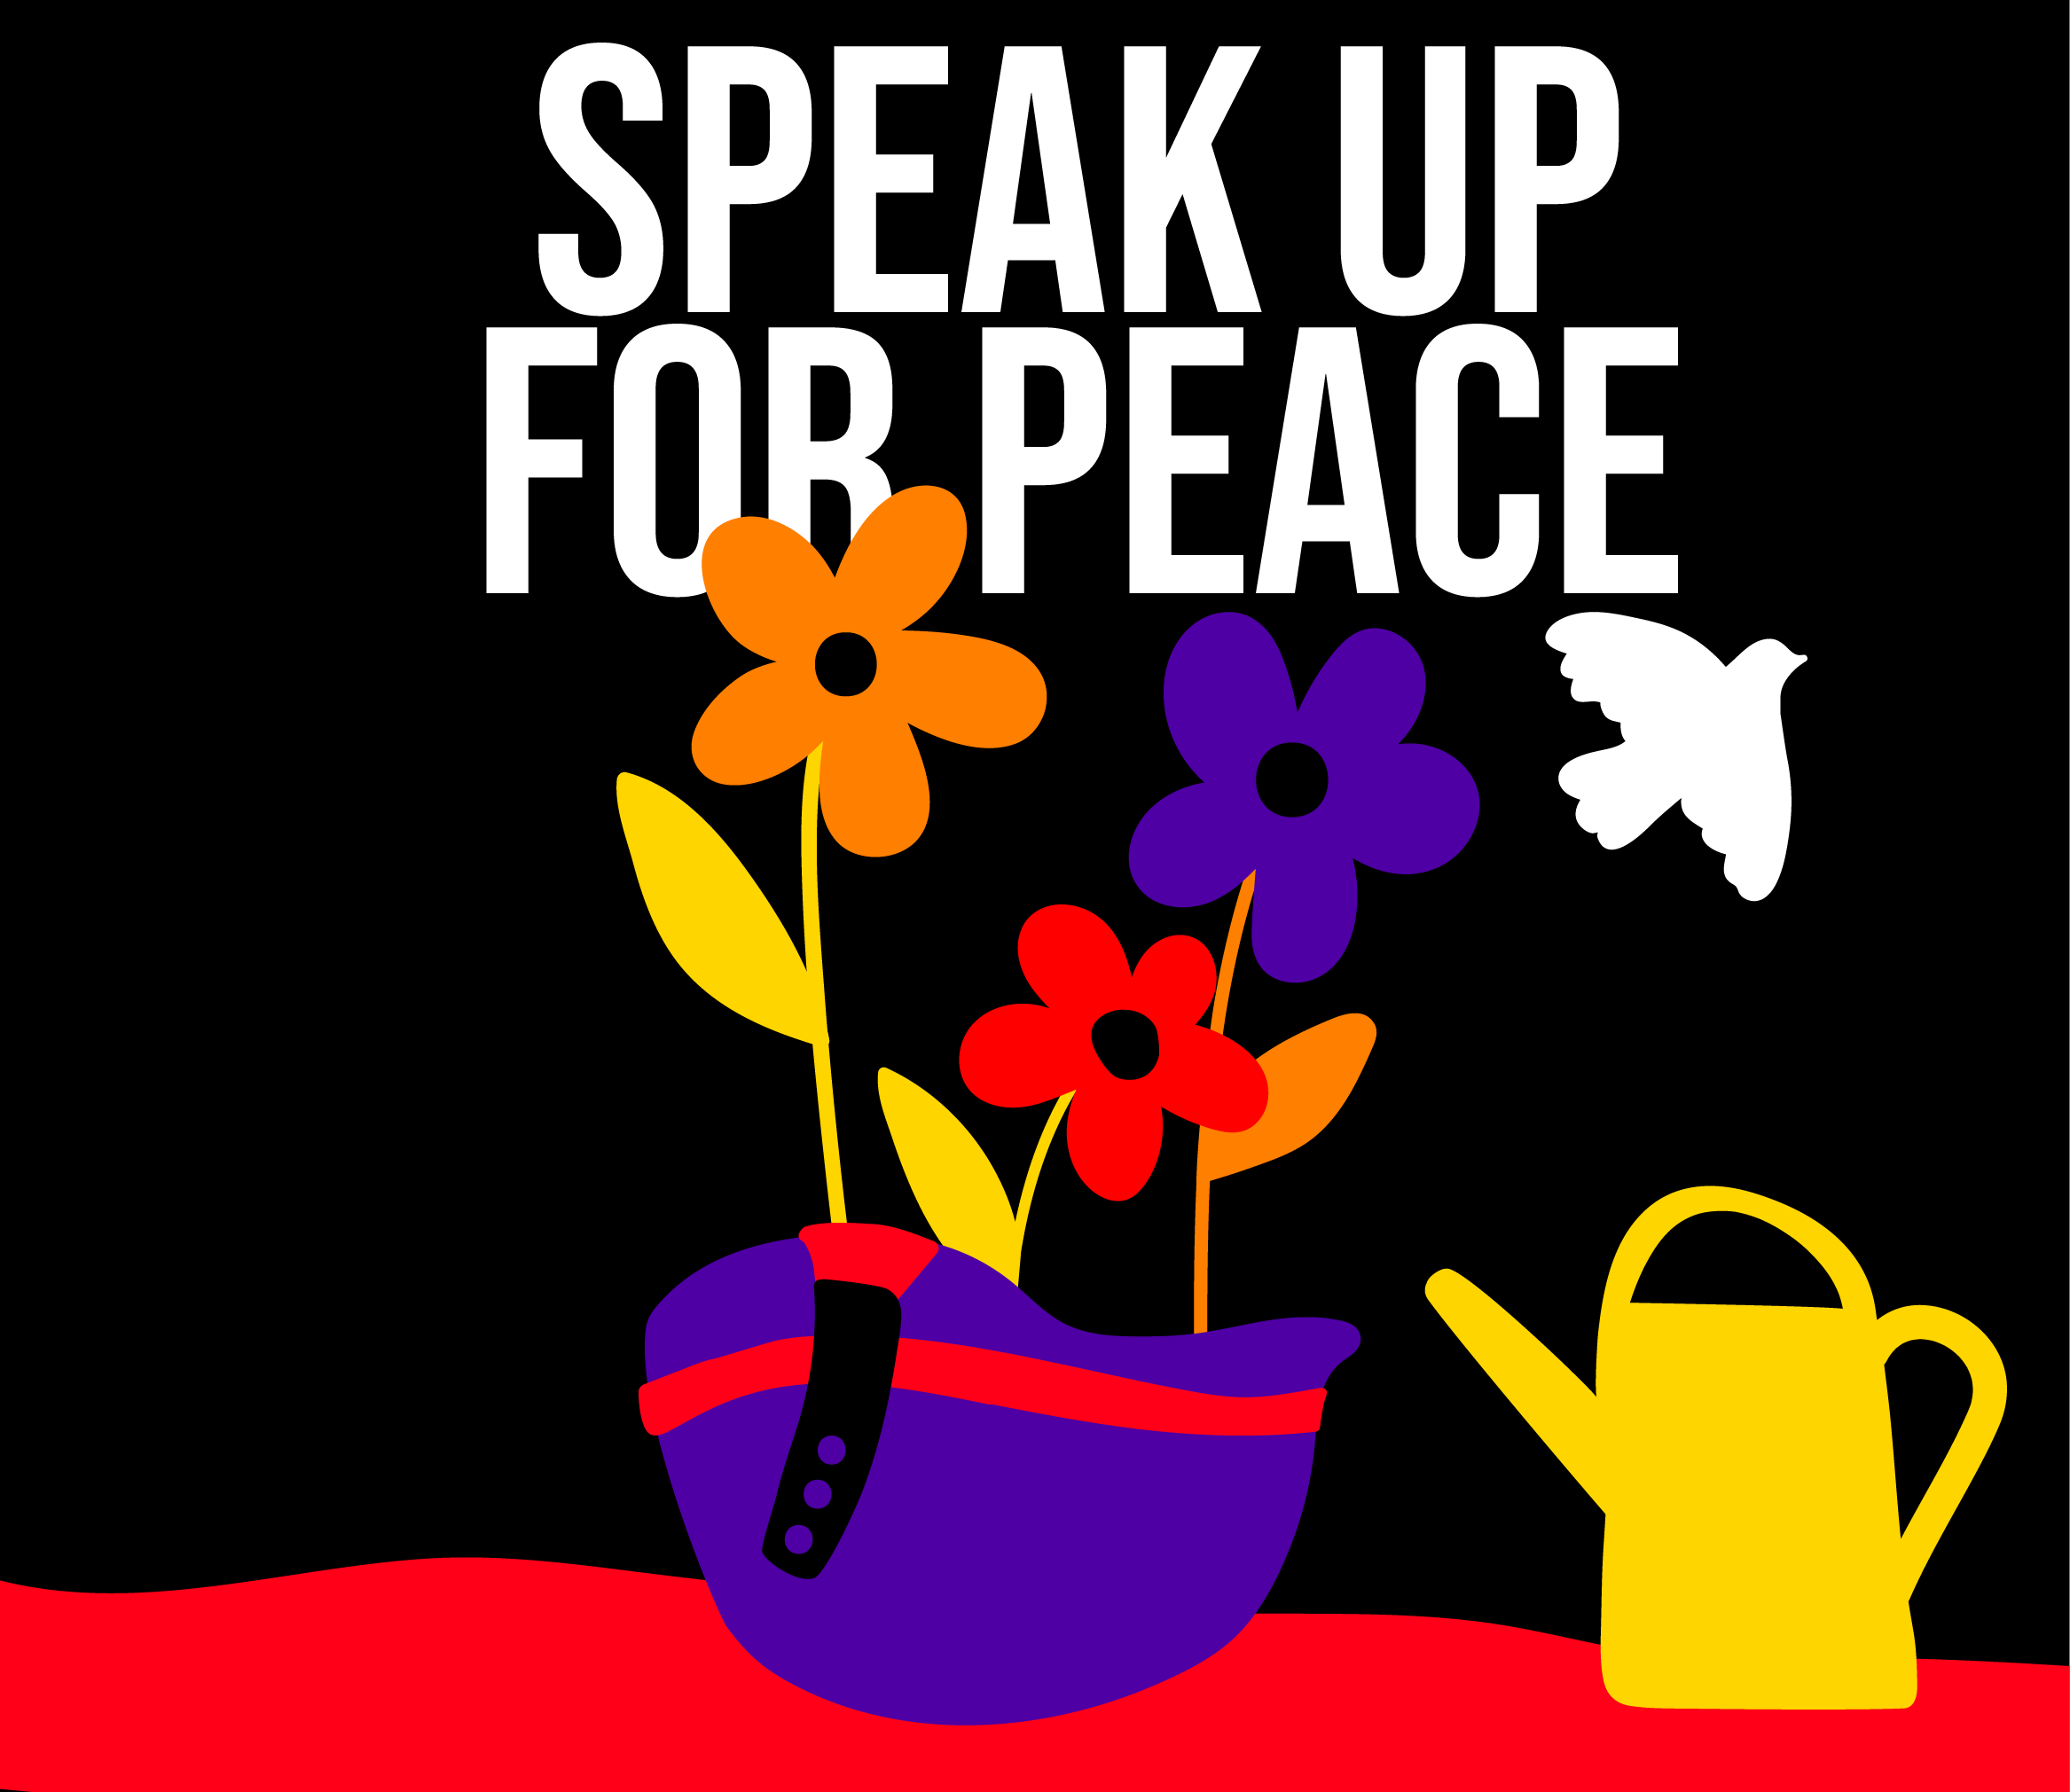 illustration written Speak up for peace